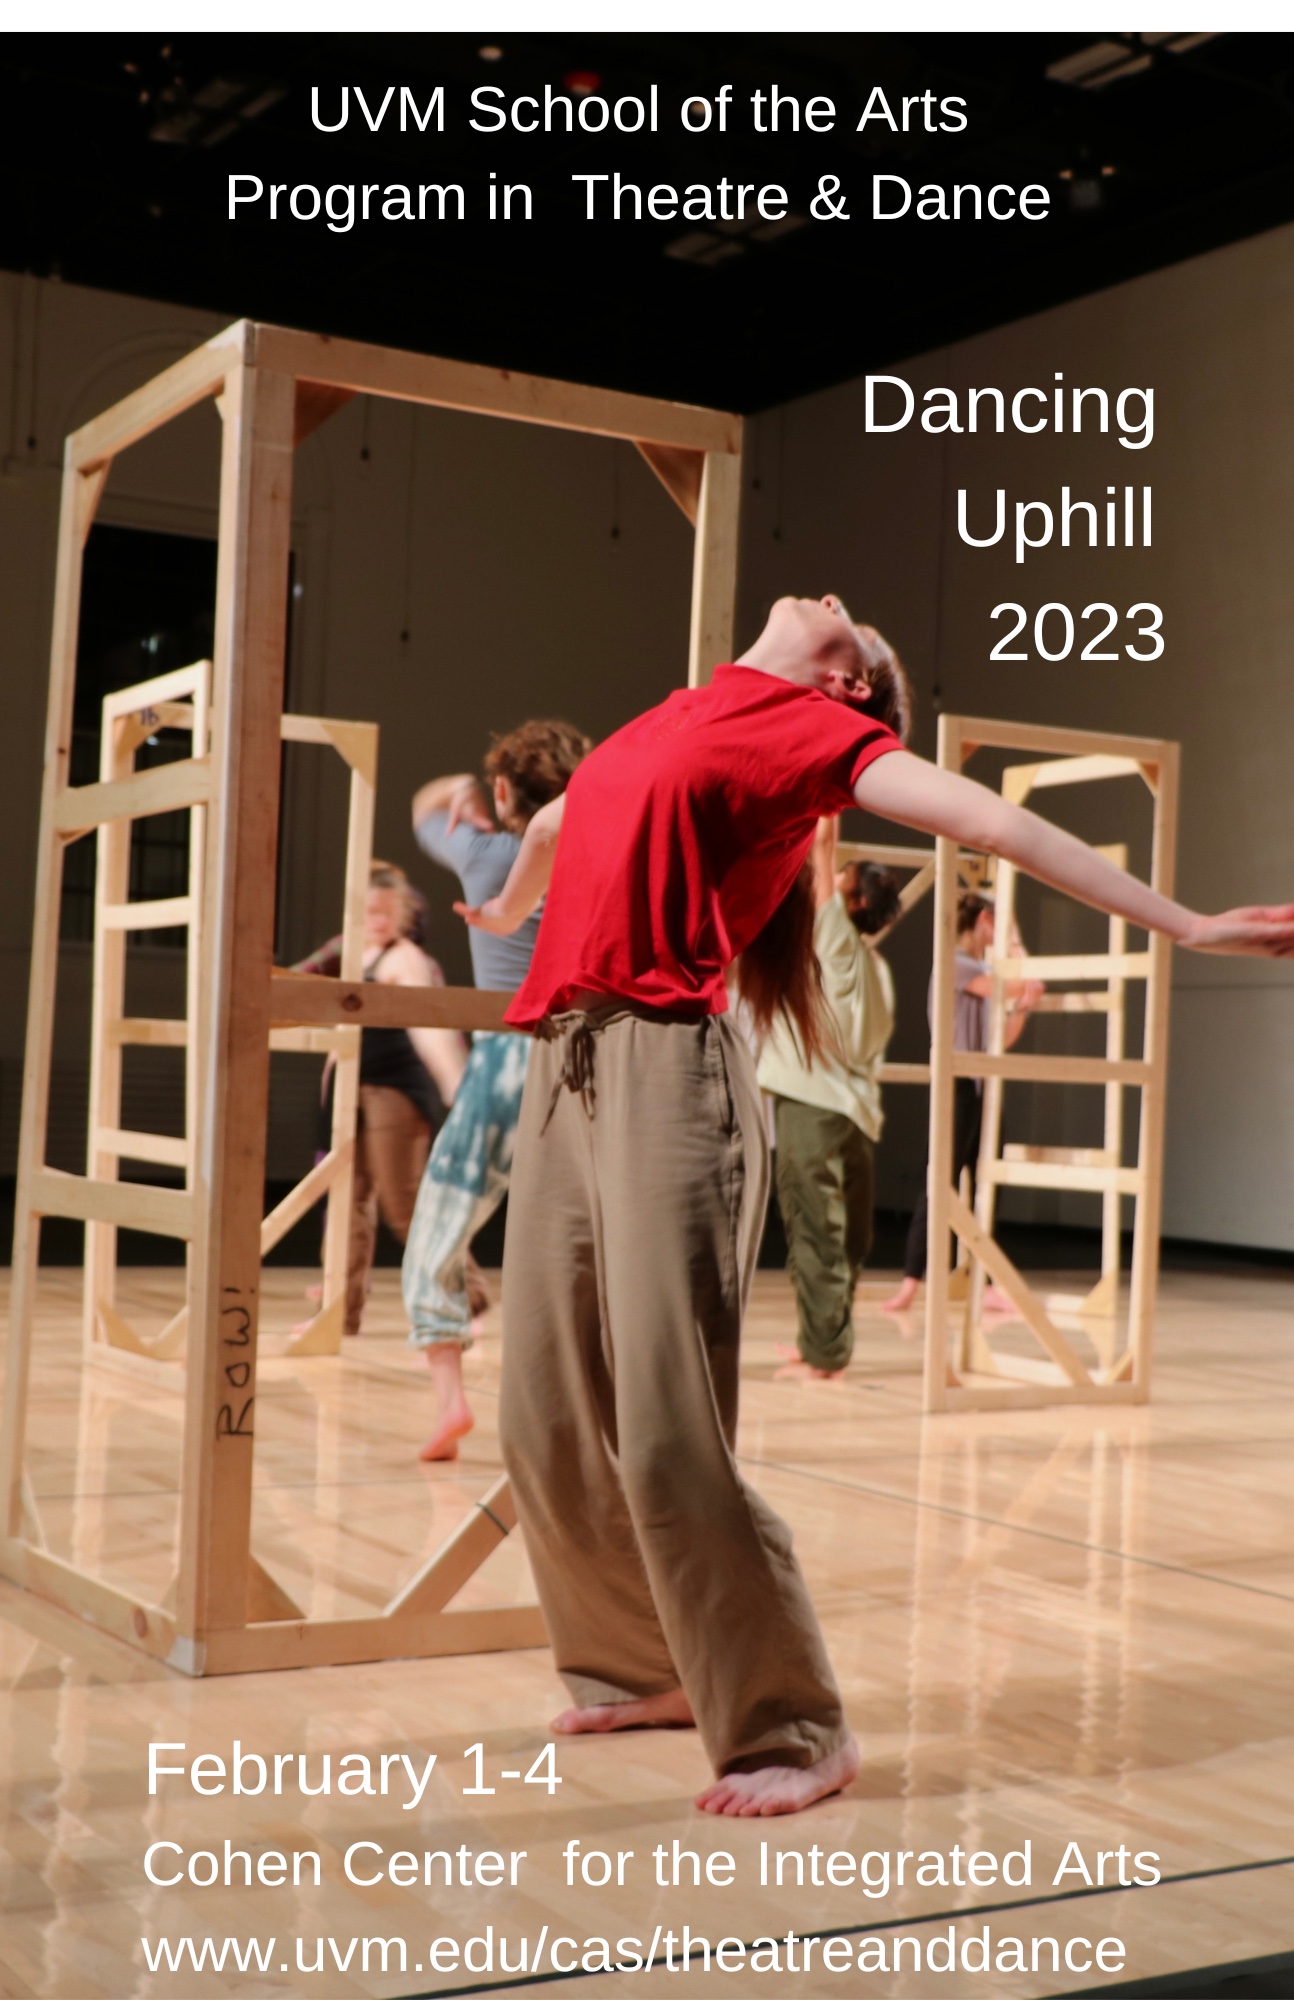 UVM Program in Theatre and Dance presents "Dancing Uphill 2023"